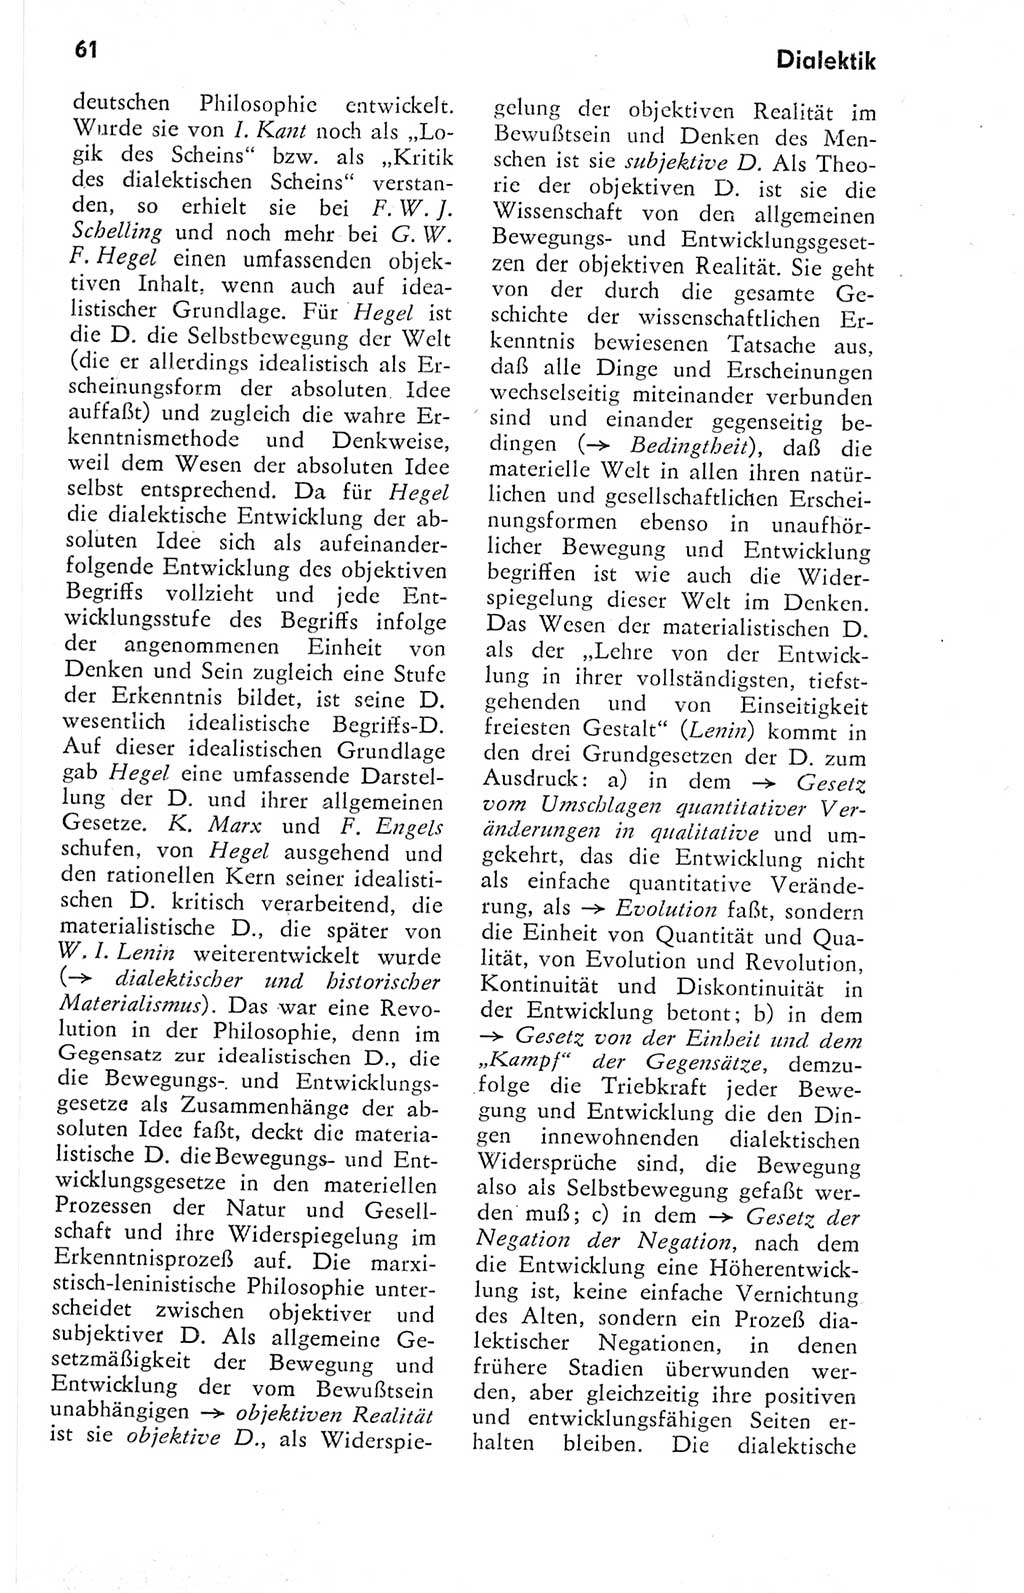 Kleines Wörterbuch der marxistisch-leninistischen Philosophie [Deutsche Demokratische Republik (DDR)] 1974, Seite 61 (Kl. Wb. ML Phil. DDR 1974, S. 61)